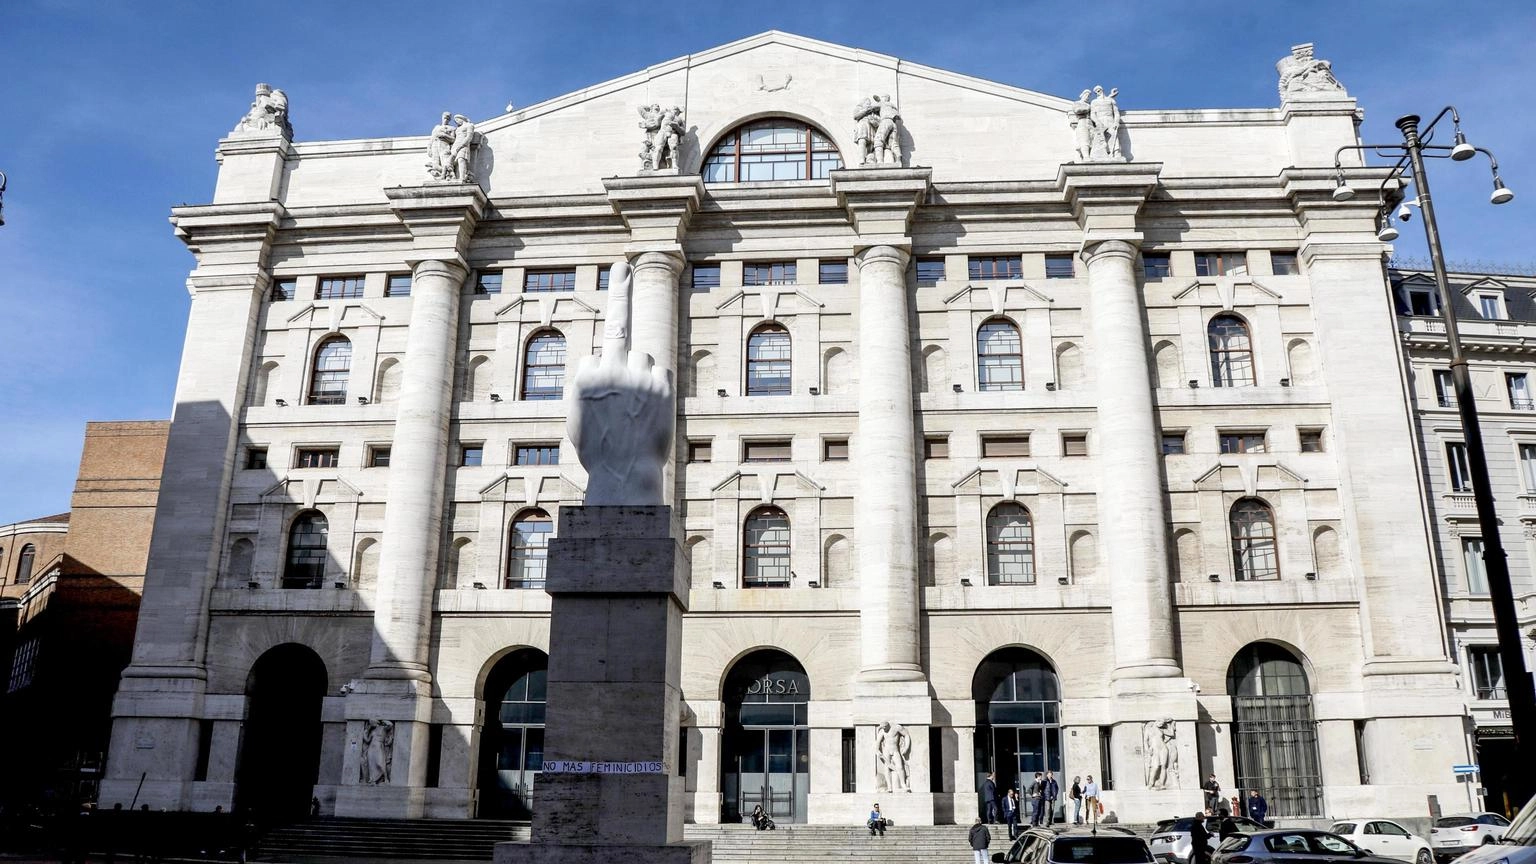 Borsa: Milano (-0,5%) fiacca con l'Europa dopo Wall street